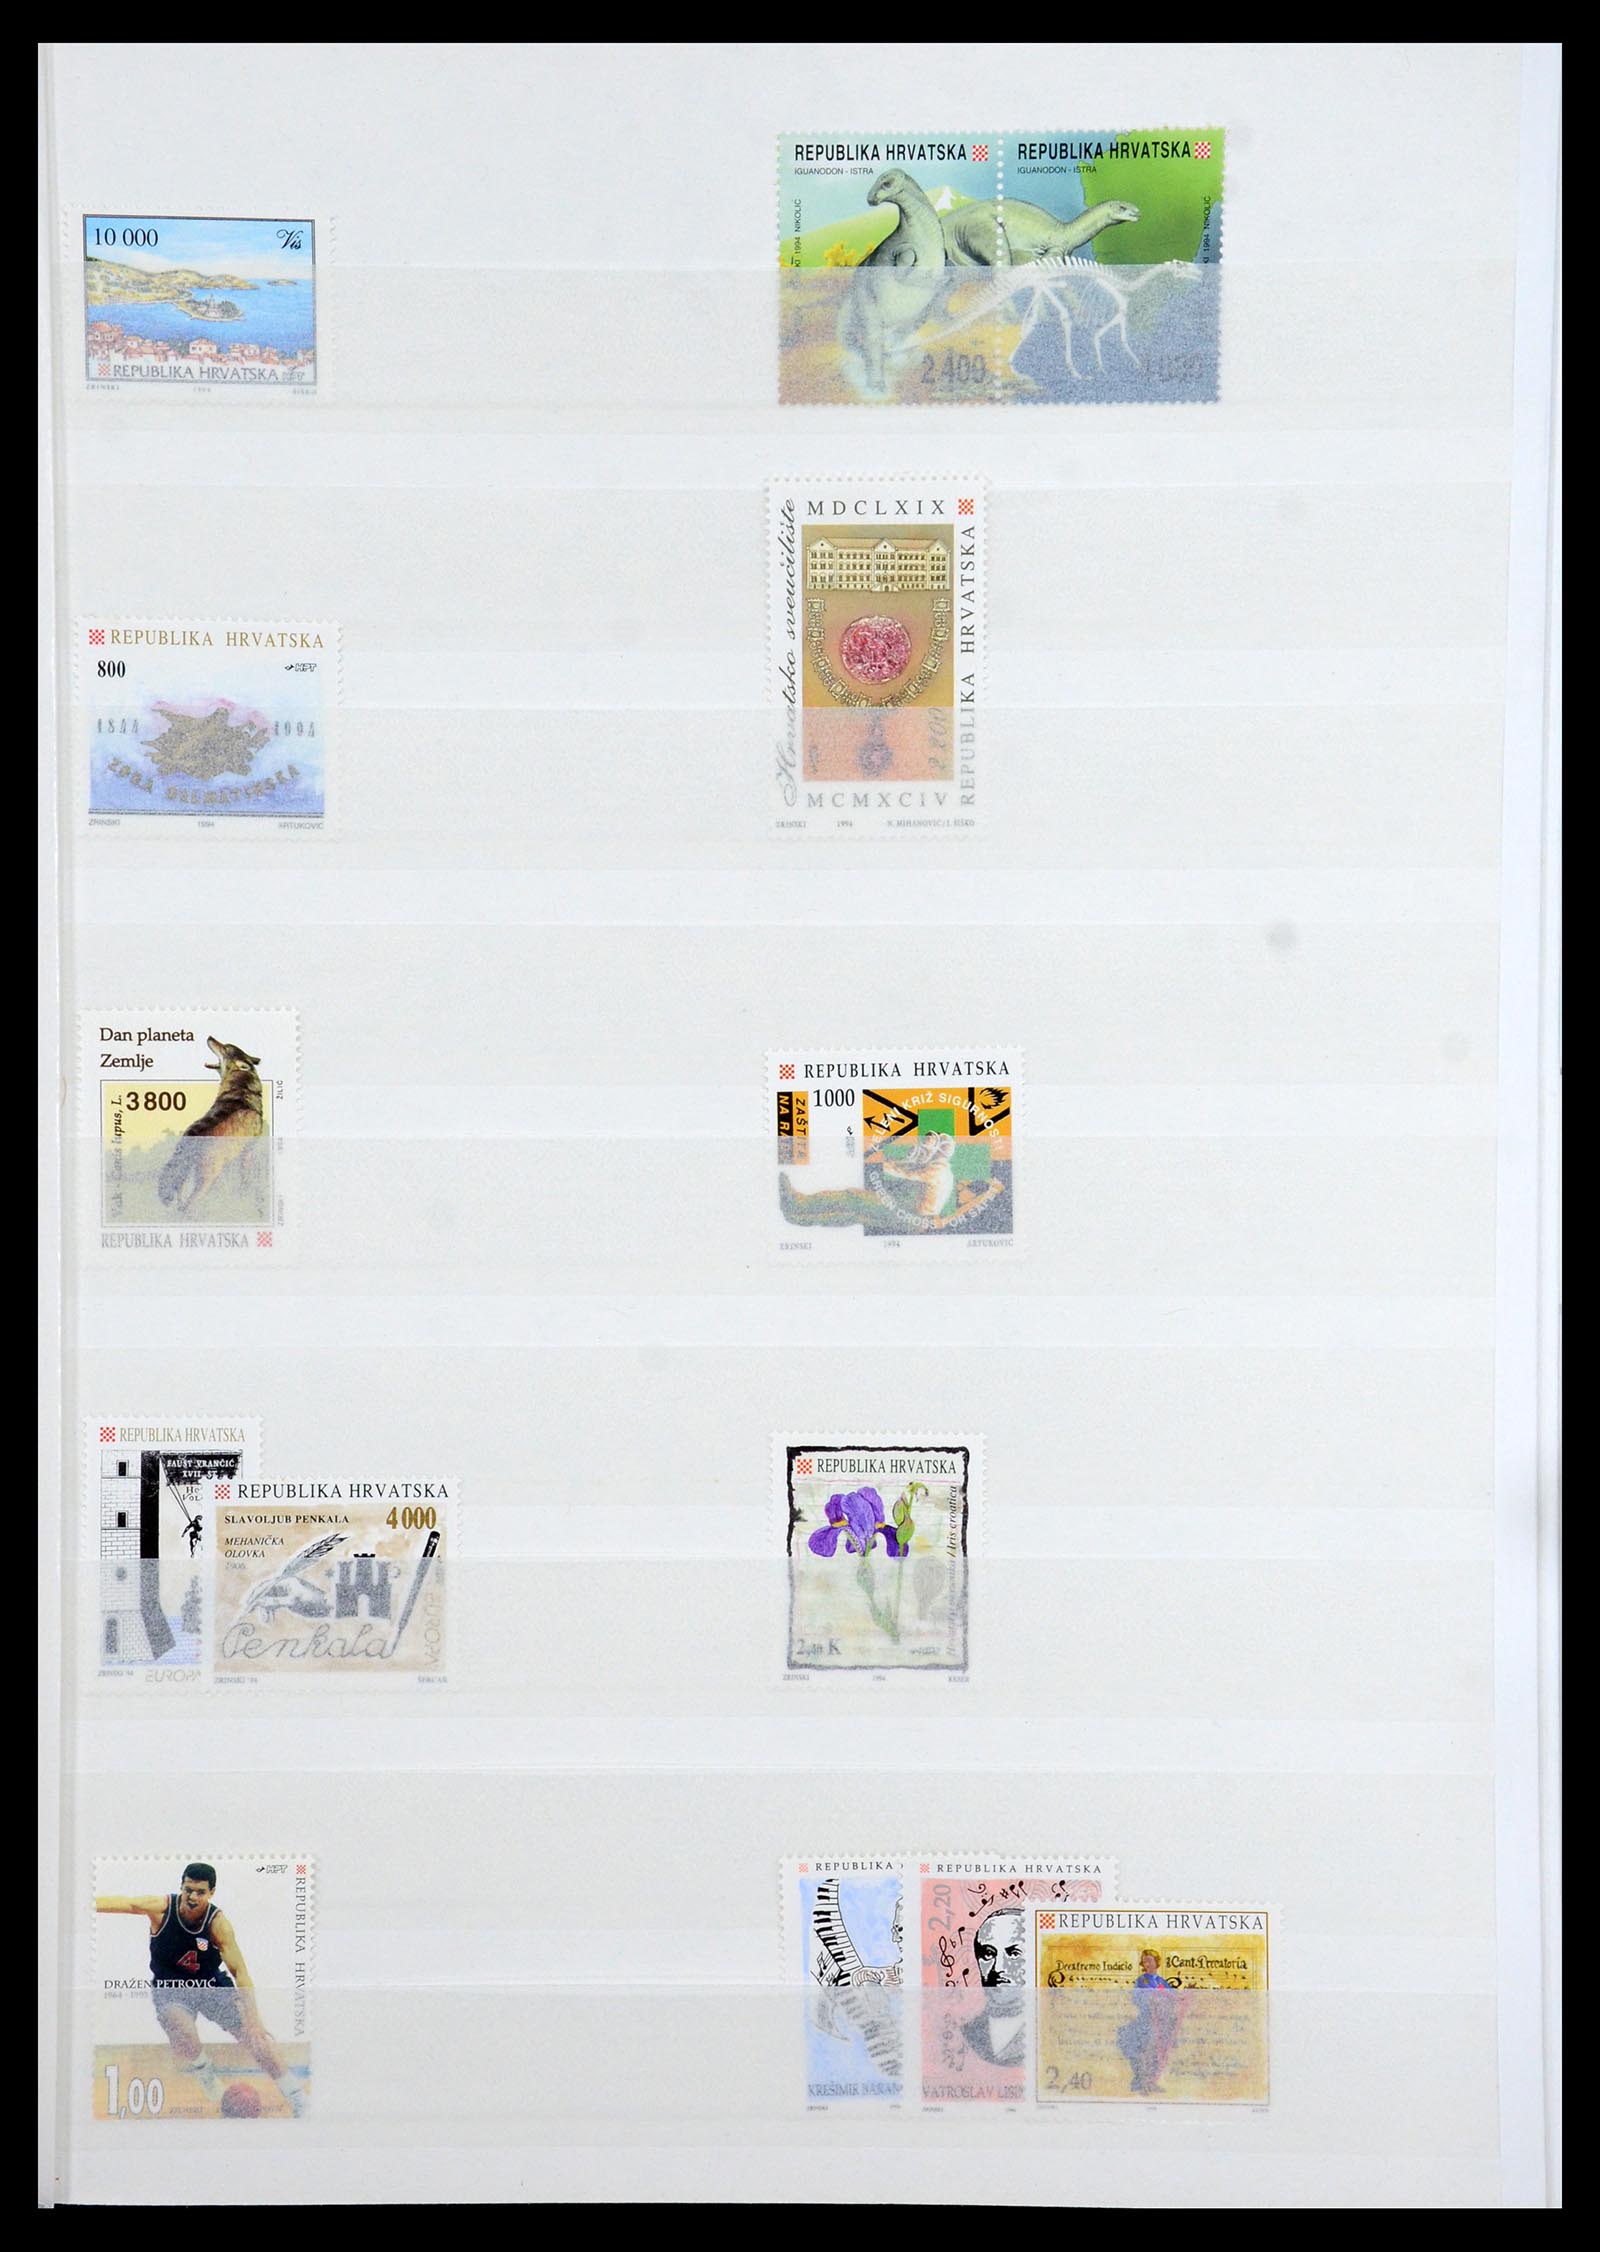 36461 039 - Stamp collection 36461 Slovenia, Croatia and Bosnia-Herzegovina MNH 1991